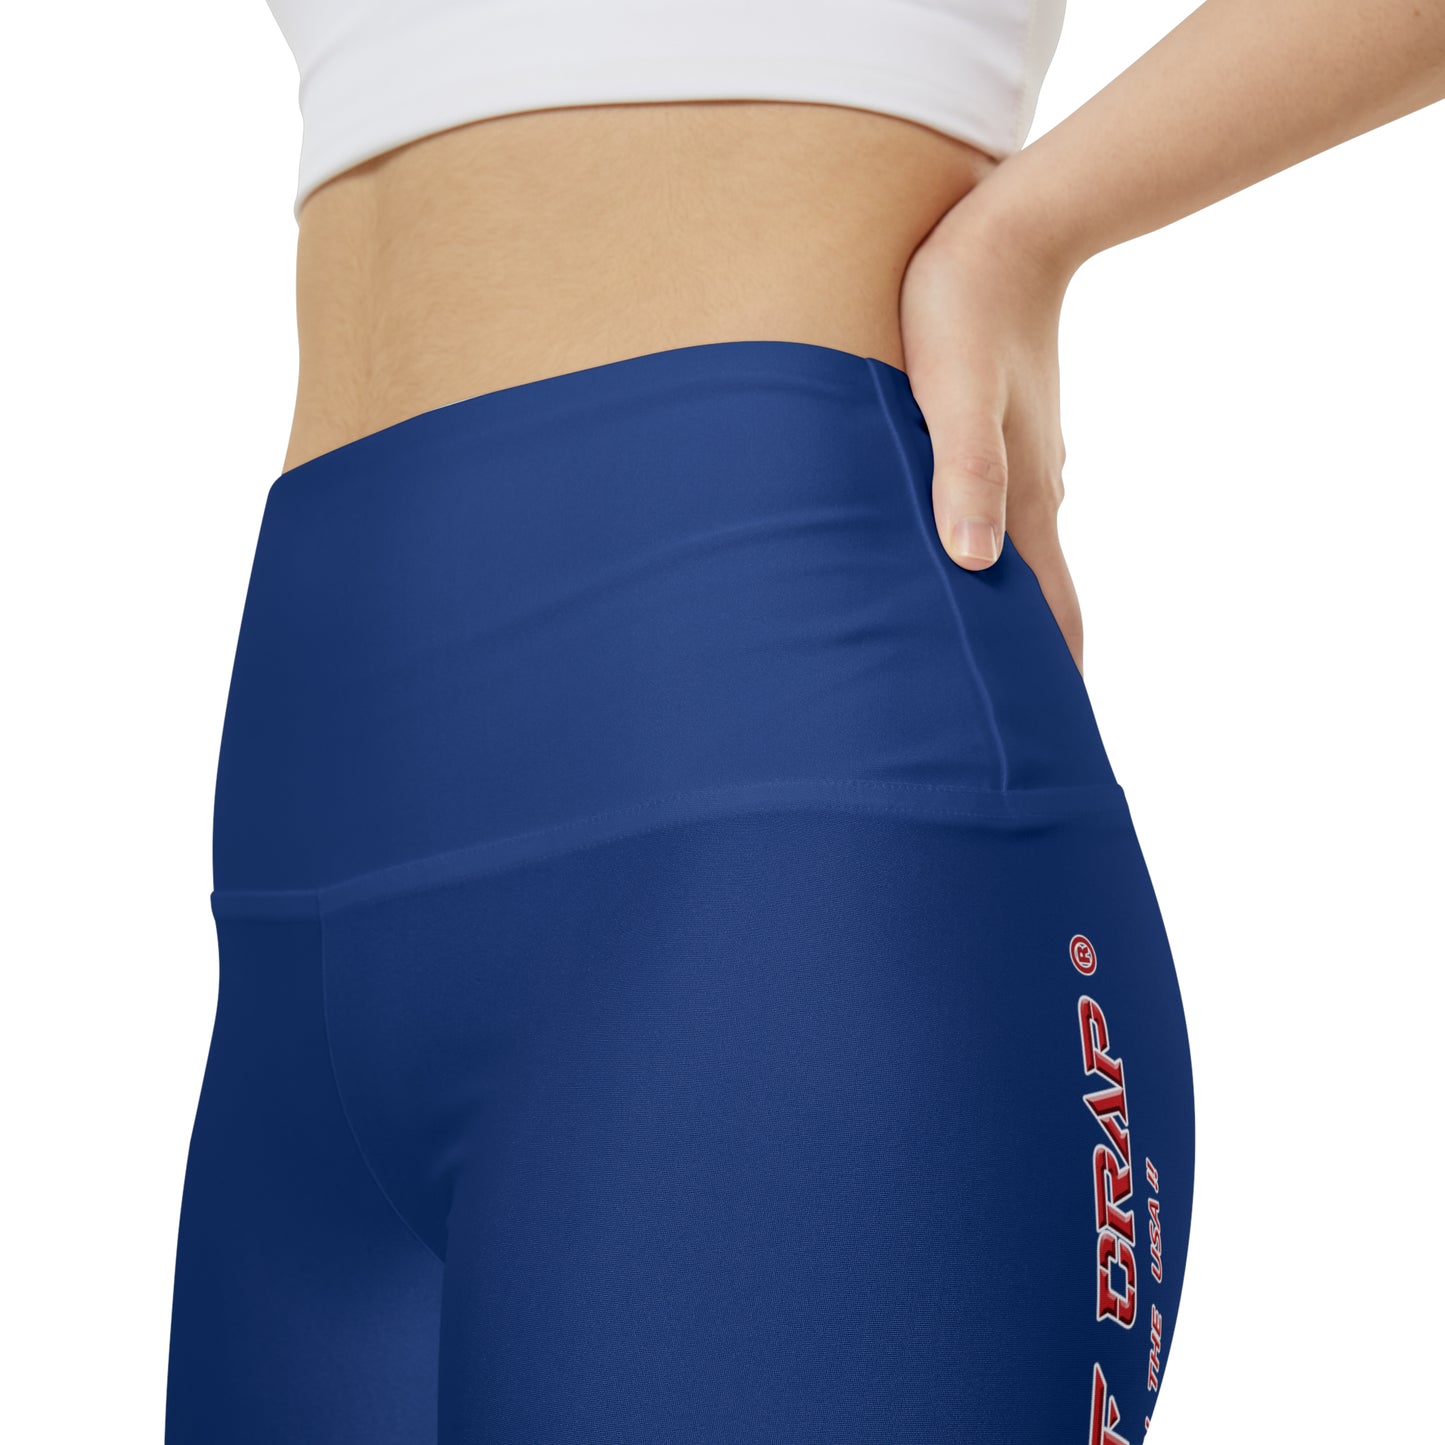 A Piece Of Crap II Women's Workout Shorts - Dark Blue